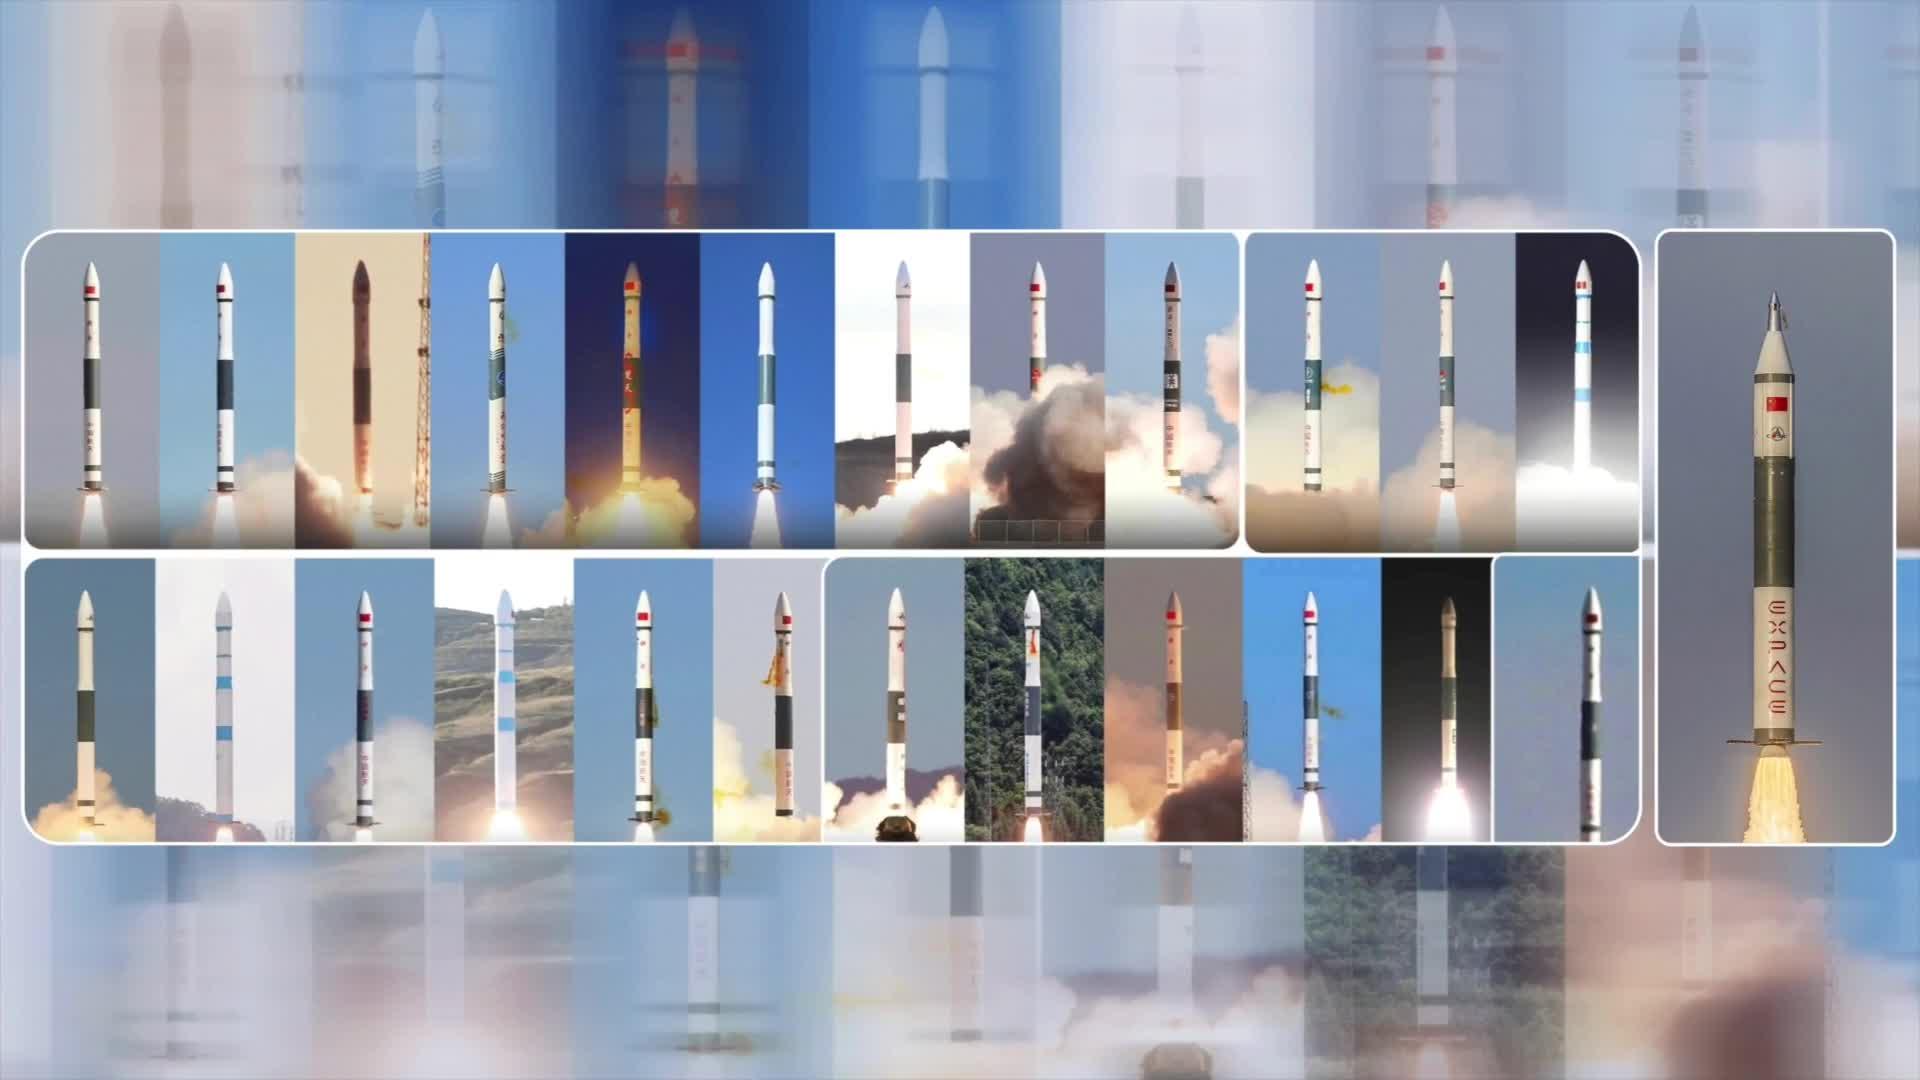 励维展示助力快舟火箭亮相中国航天日活动